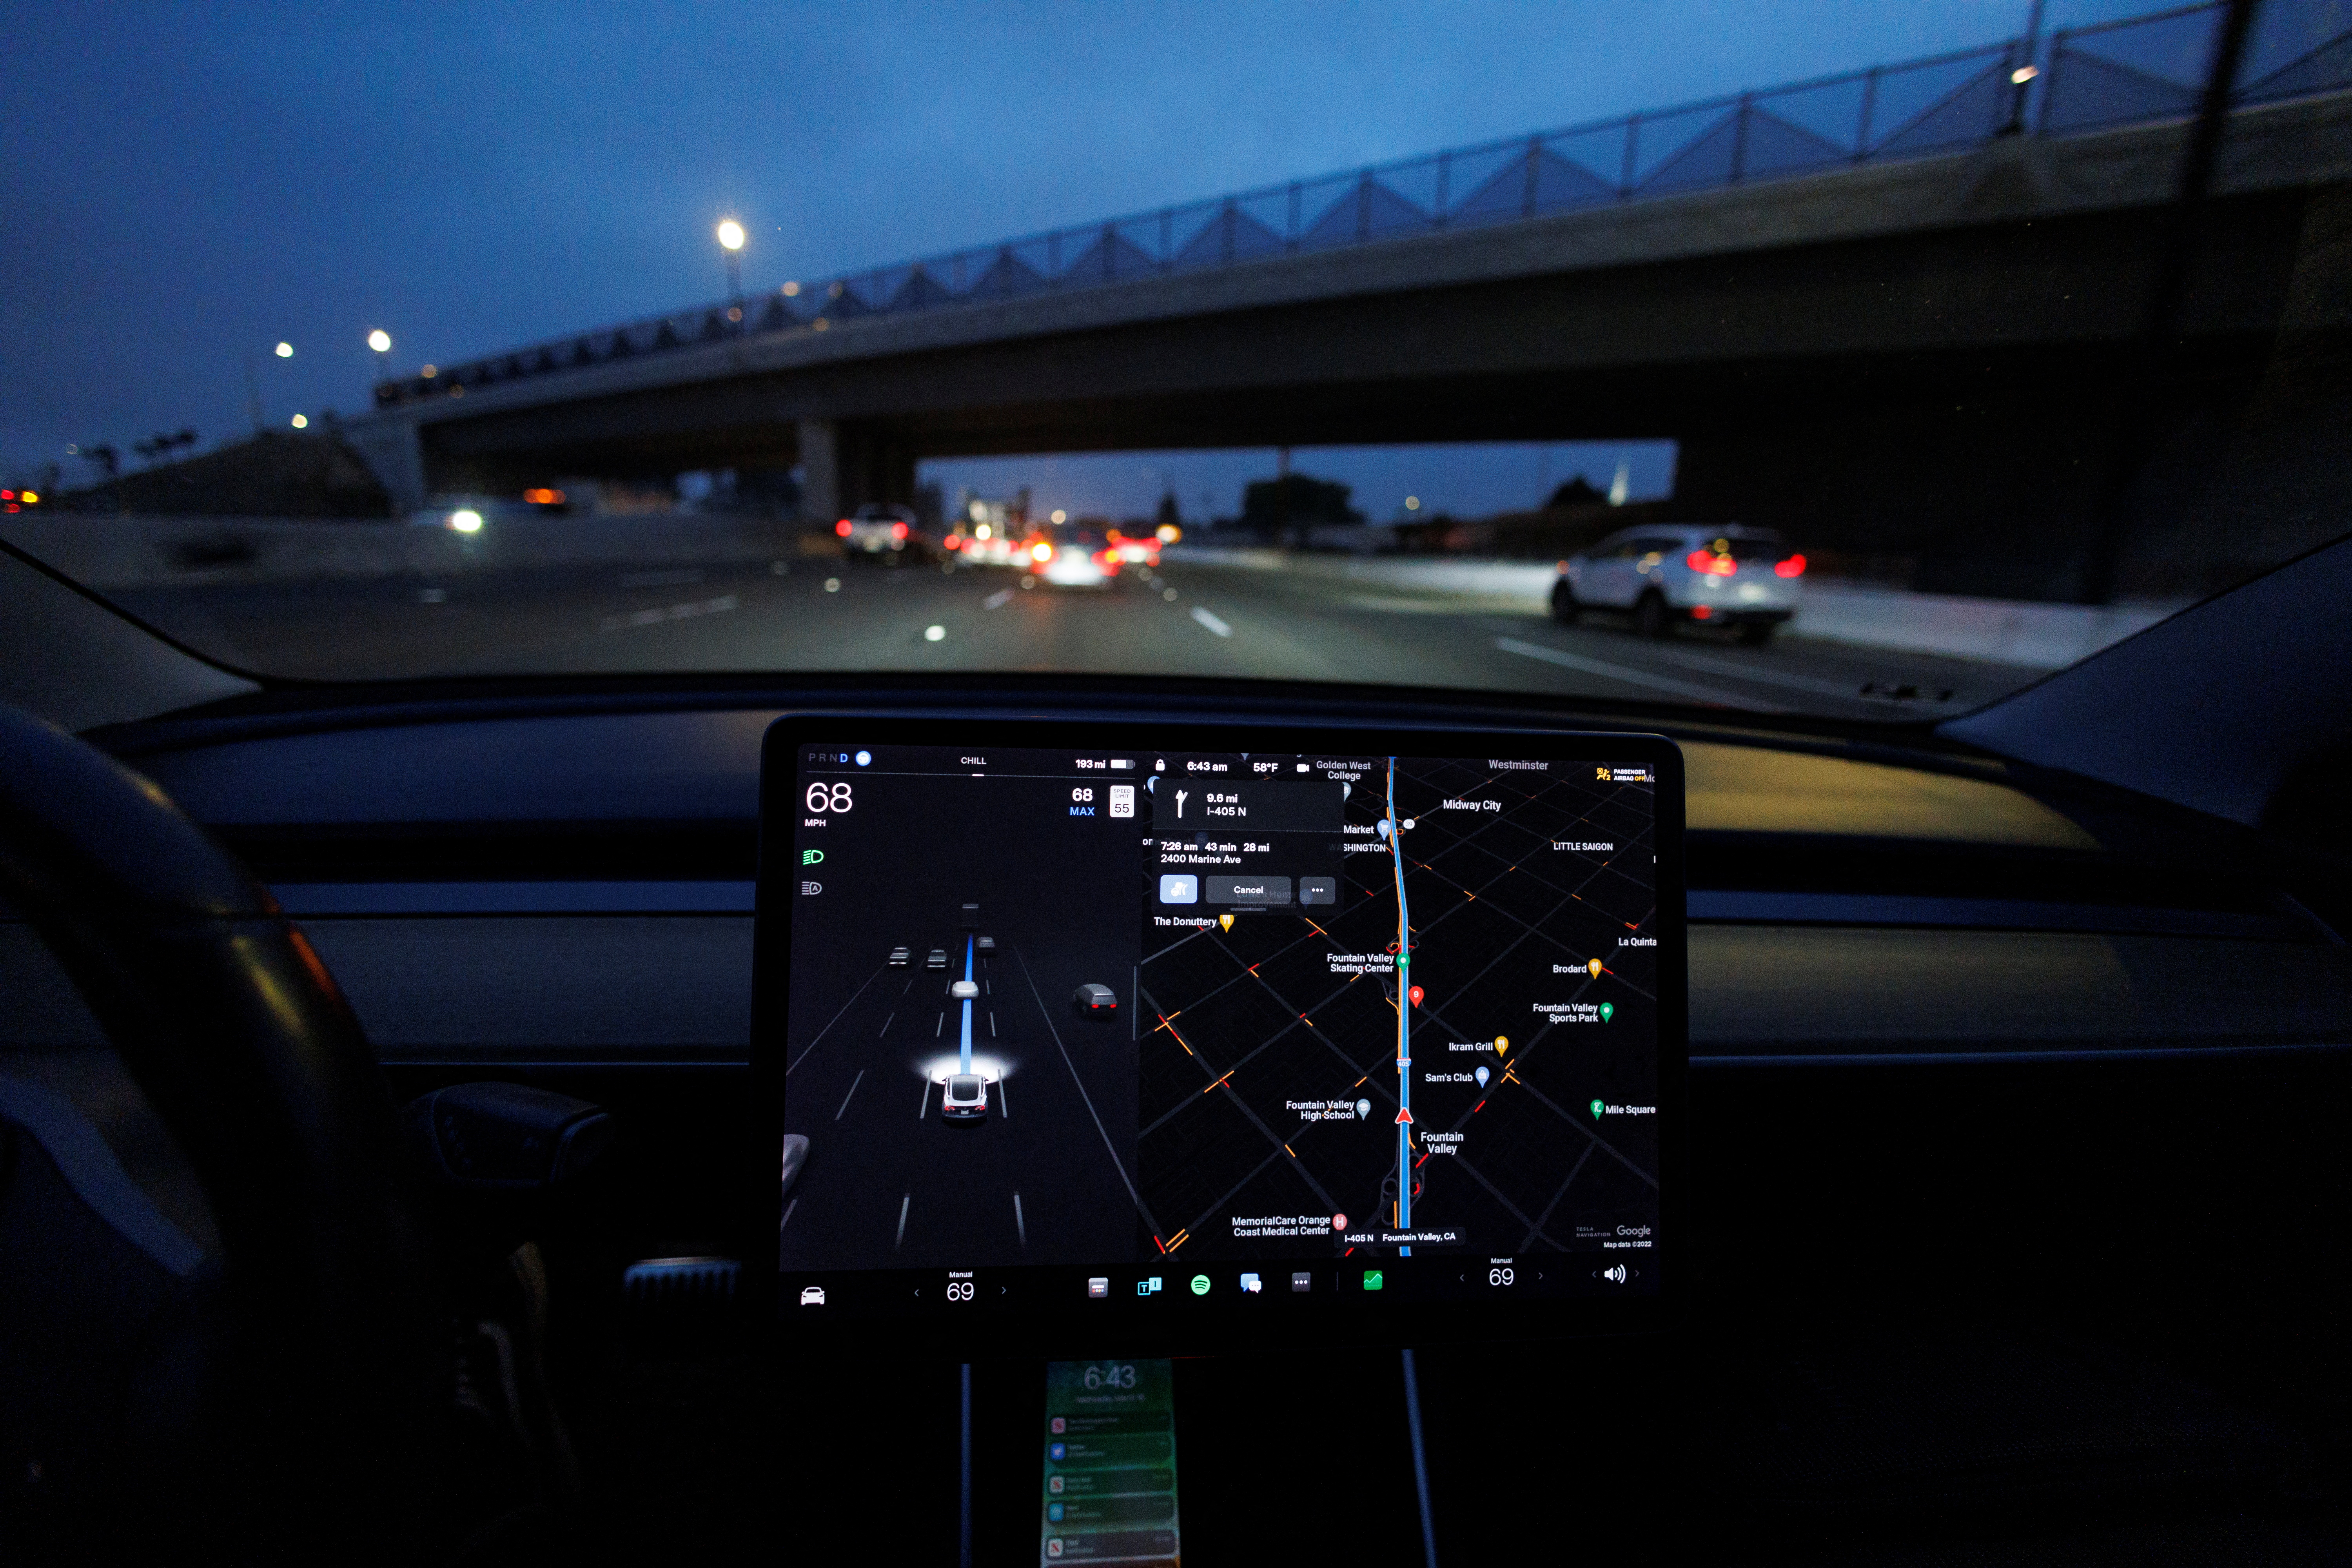 El sistema Autopilot de Tesla, es el que permite que los autos tengan conducción autónoma de Nivel 2. Bajo ese uso se produjeron accidentes que la NHTSA está investigando